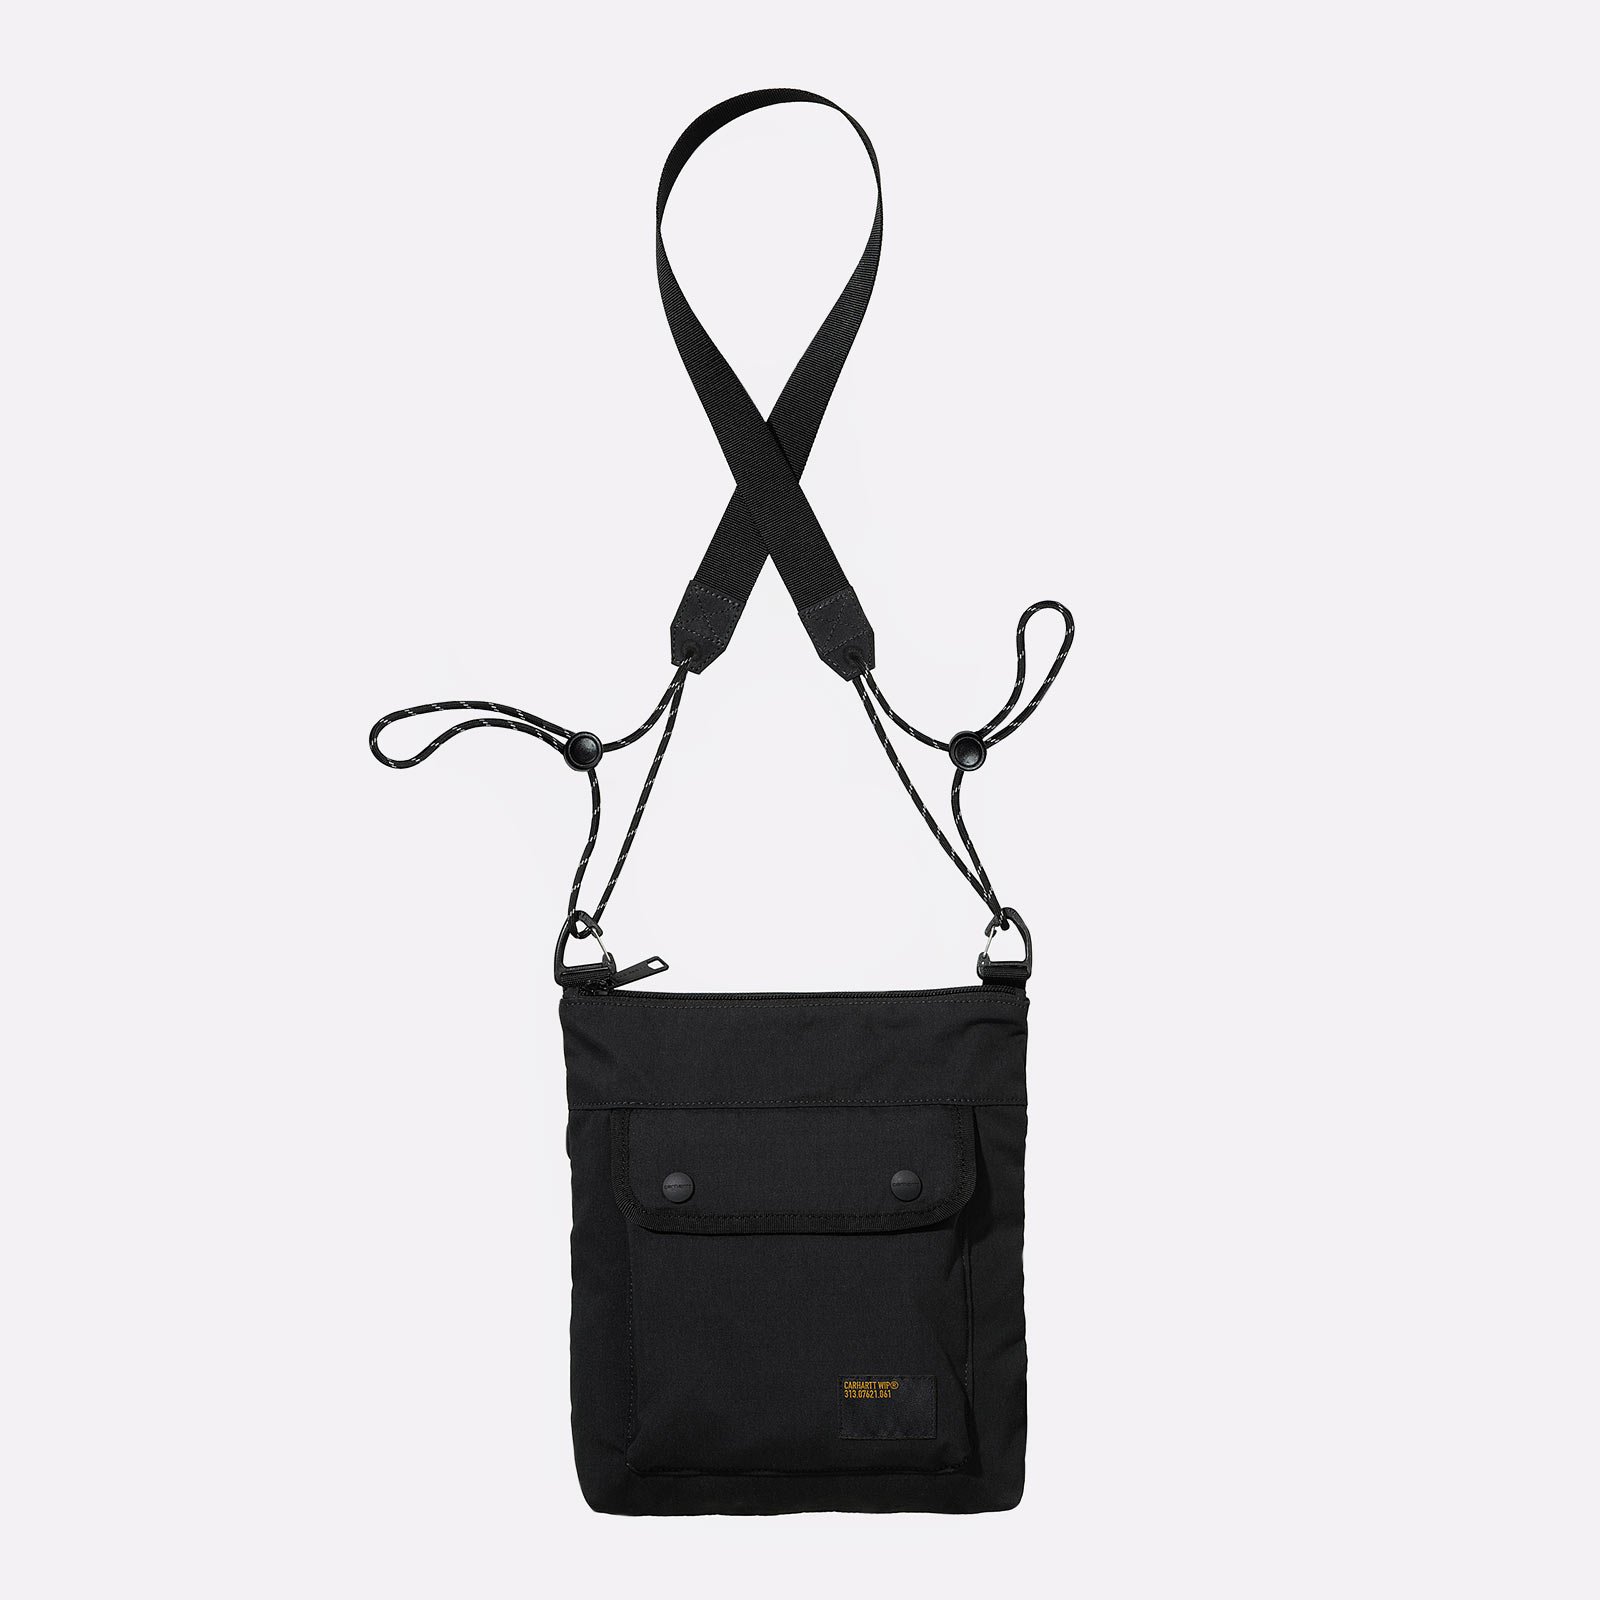  черная сумка Carhartt WIP Haste Strap Bag I032191-black - цена, описание, фото 1